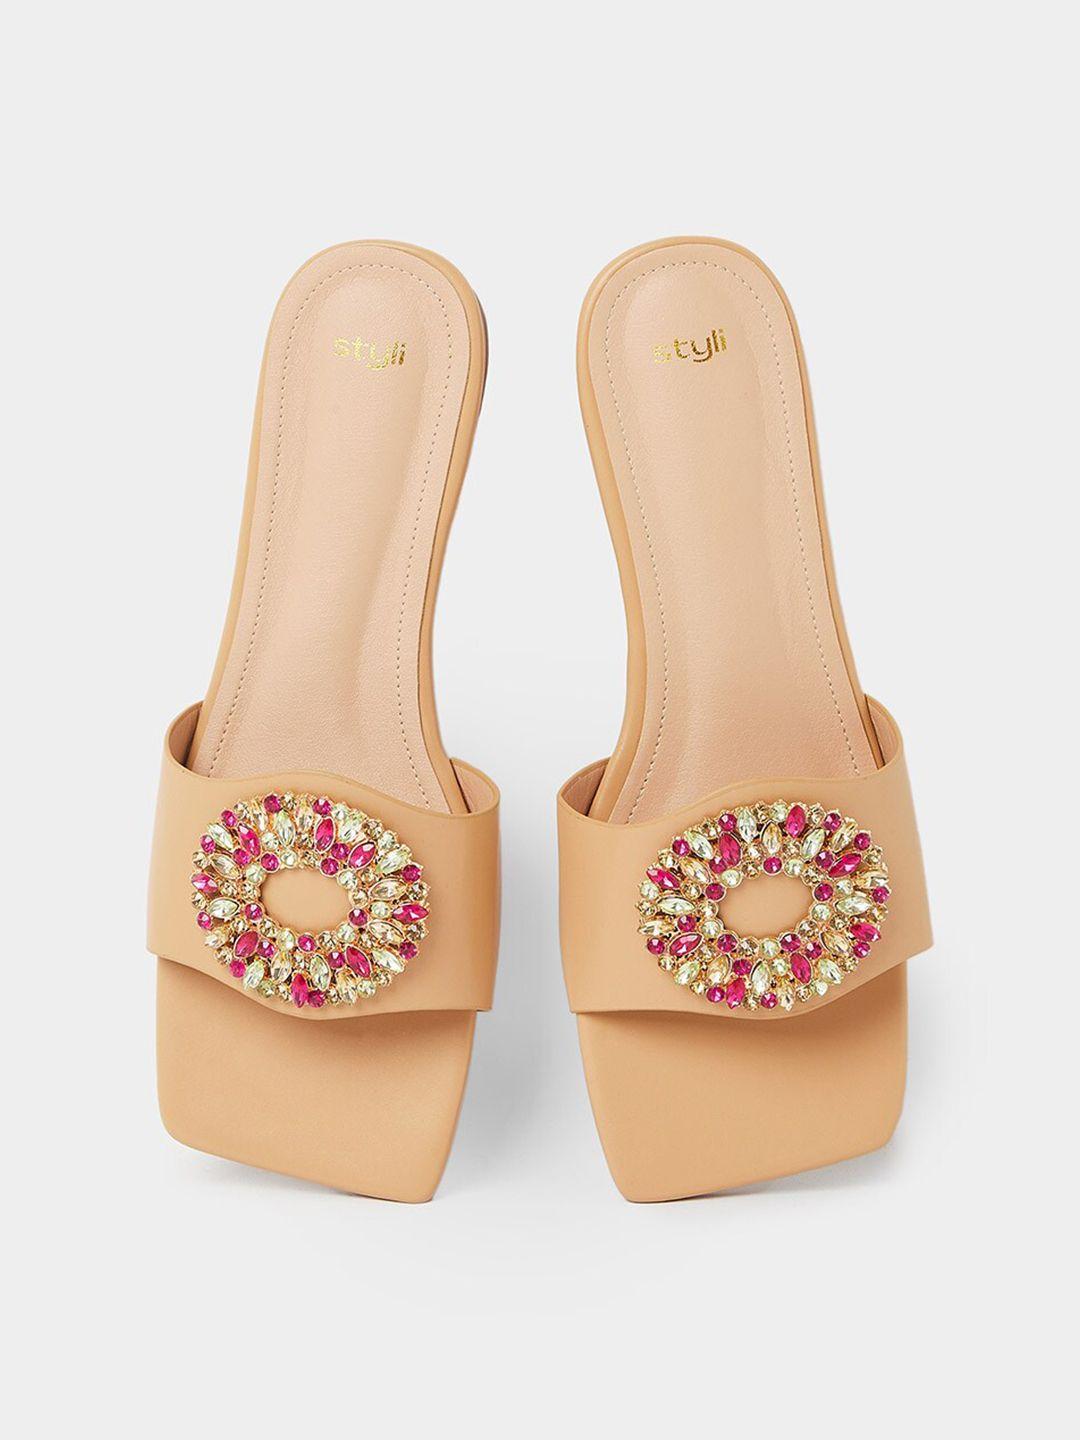 styli women embellished open toe flats